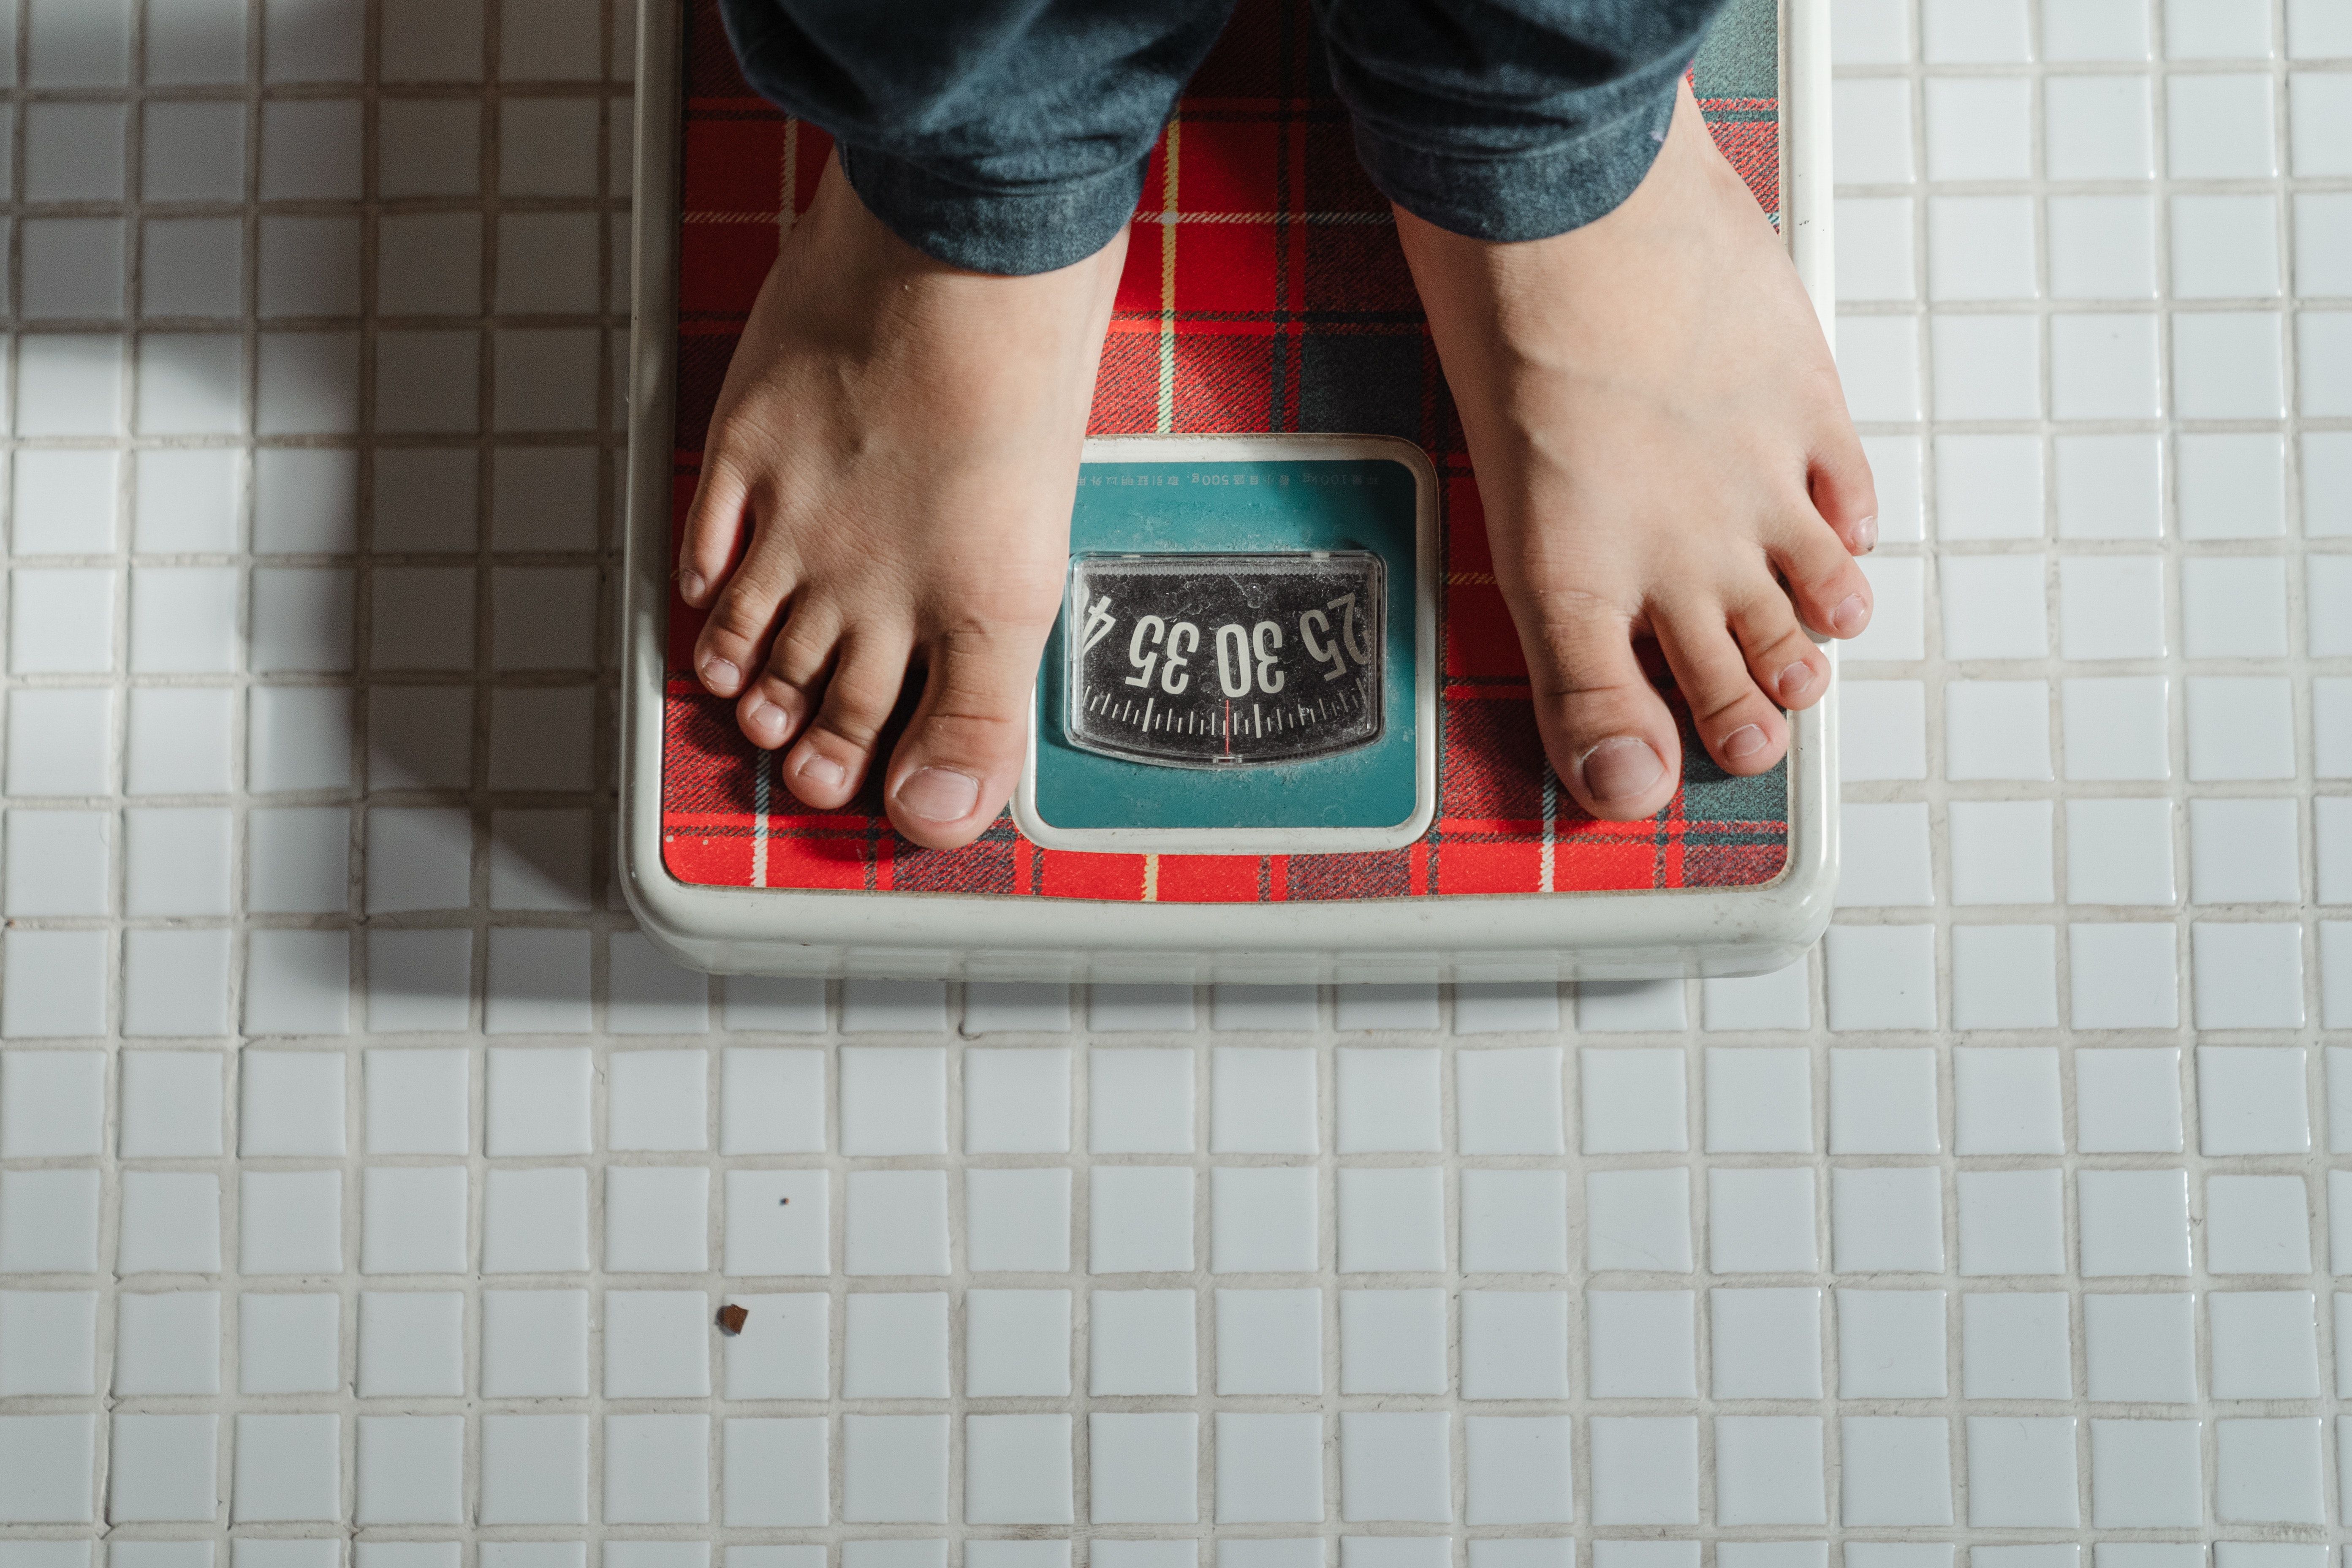 Метаболизм важен для похудения